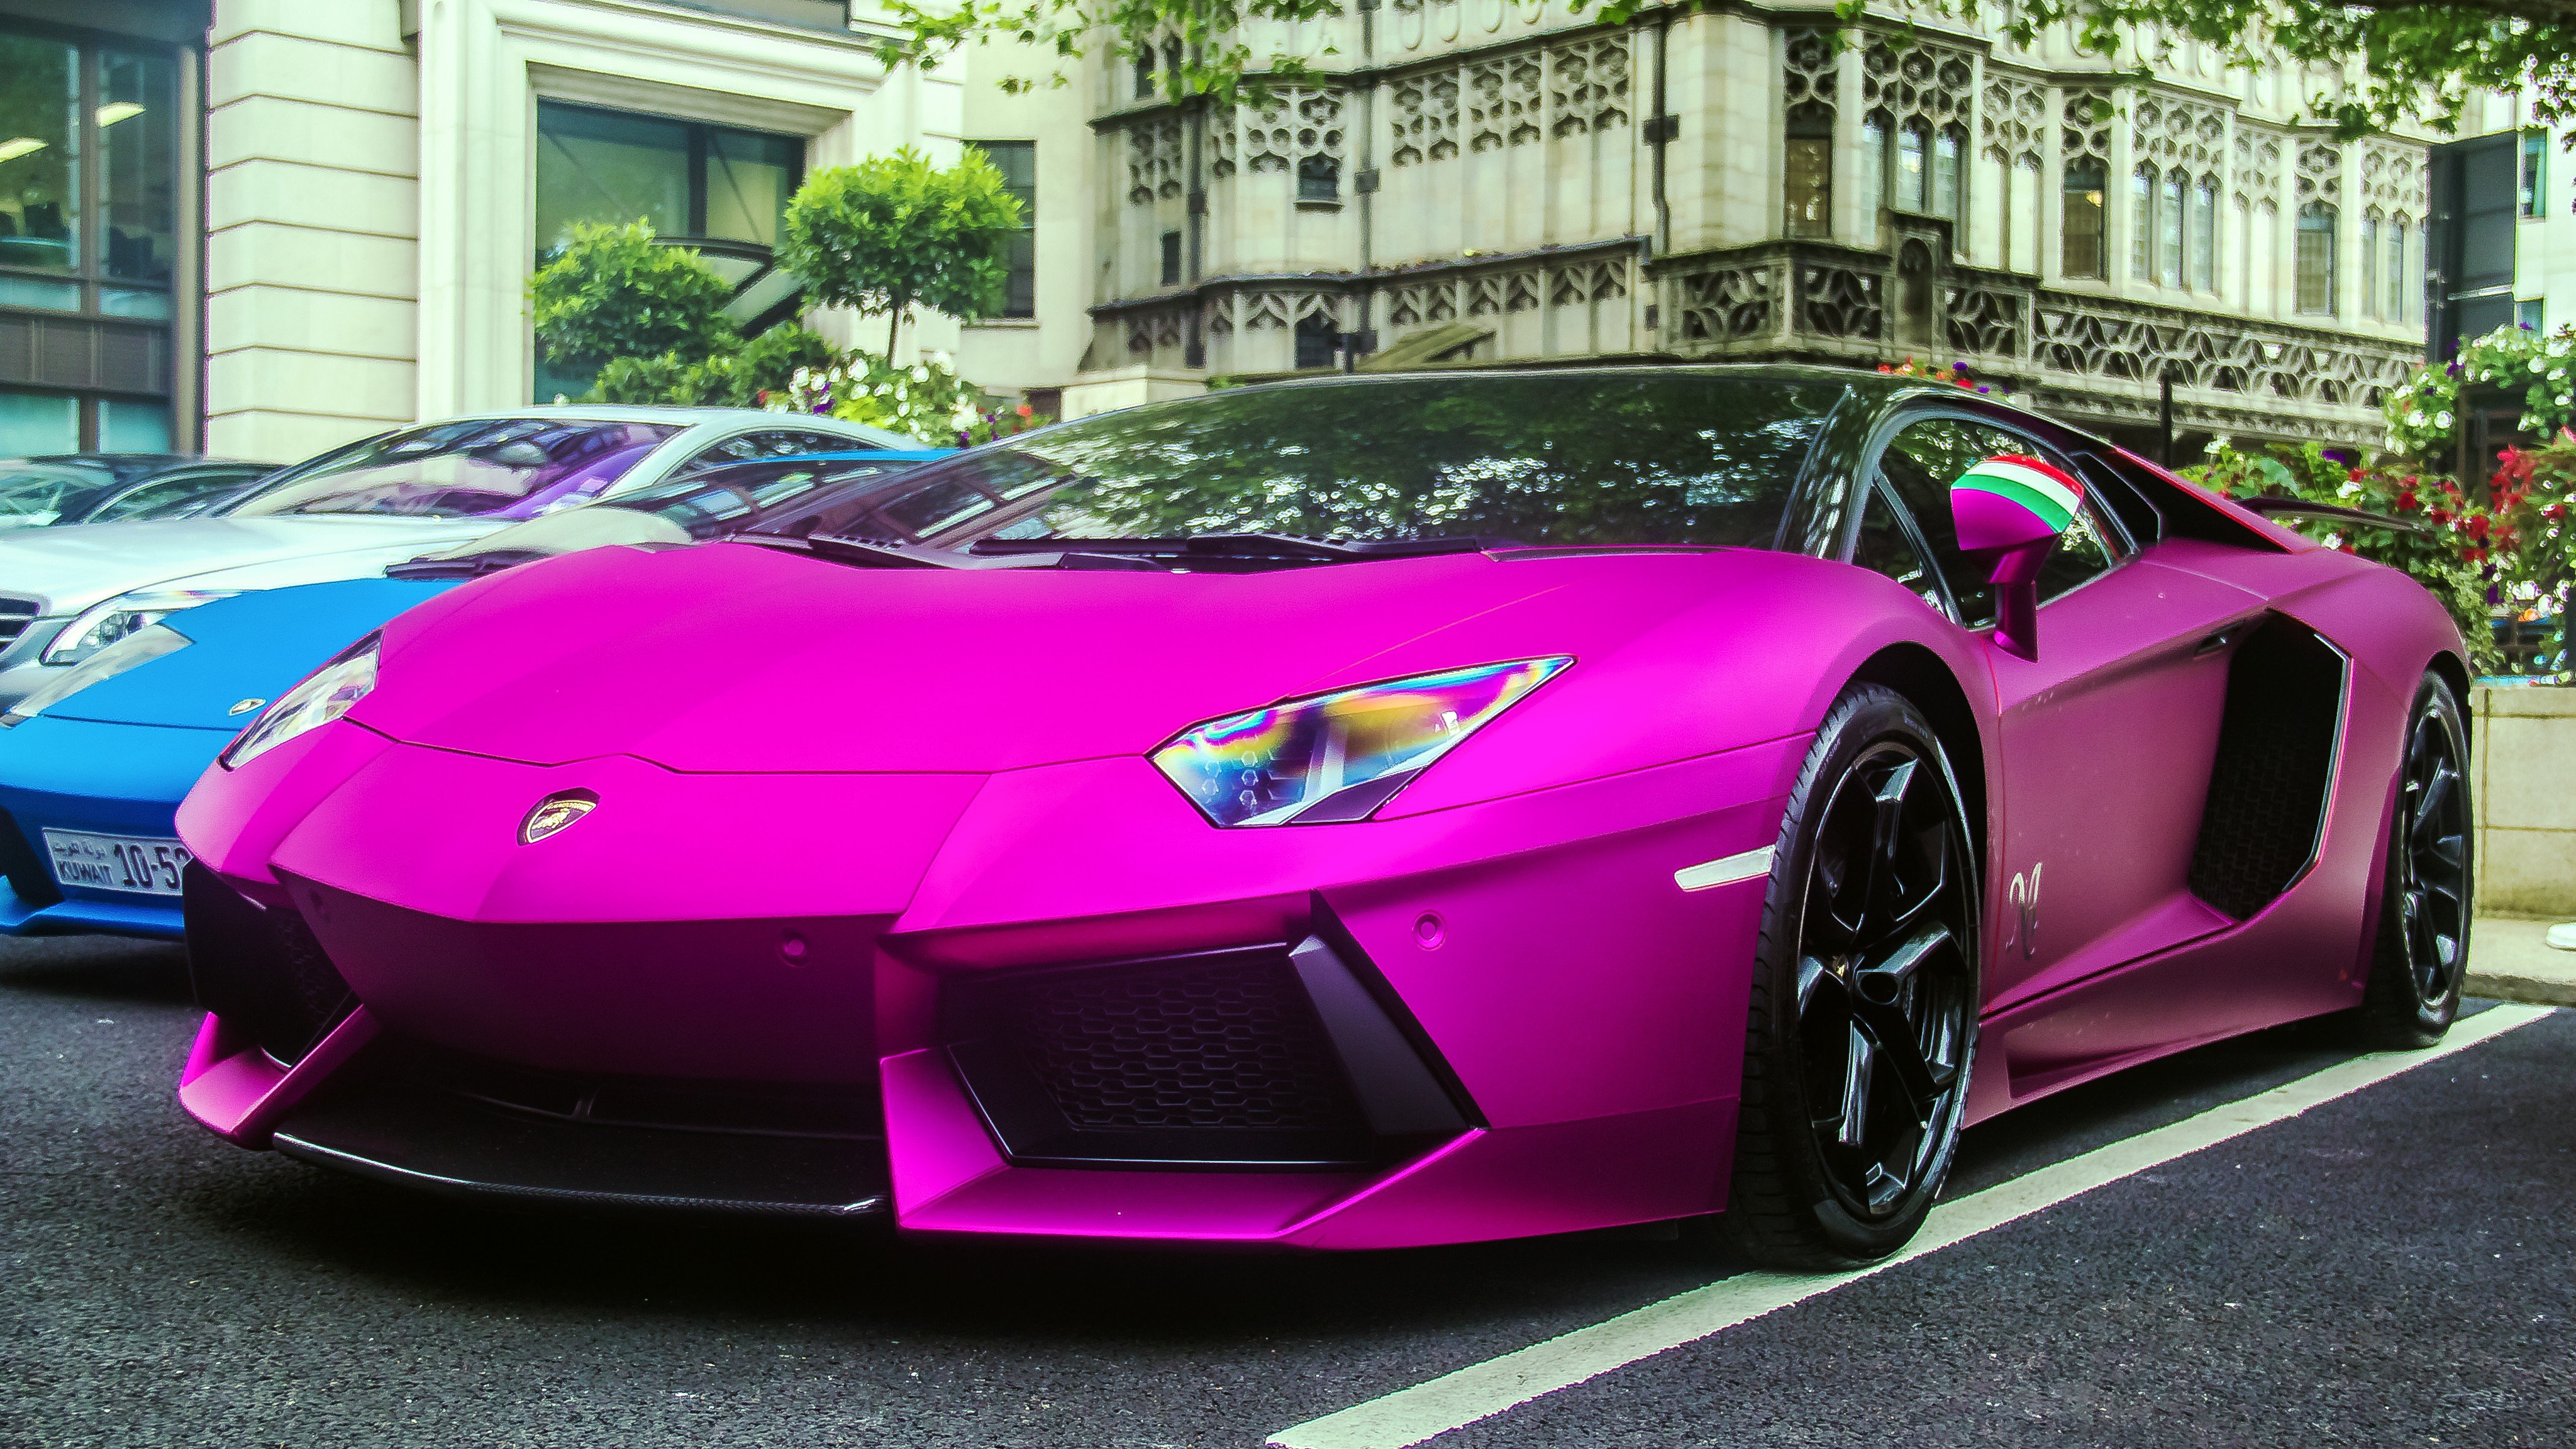 Pink Lamborghini Wallpaper - WallpaperSafari